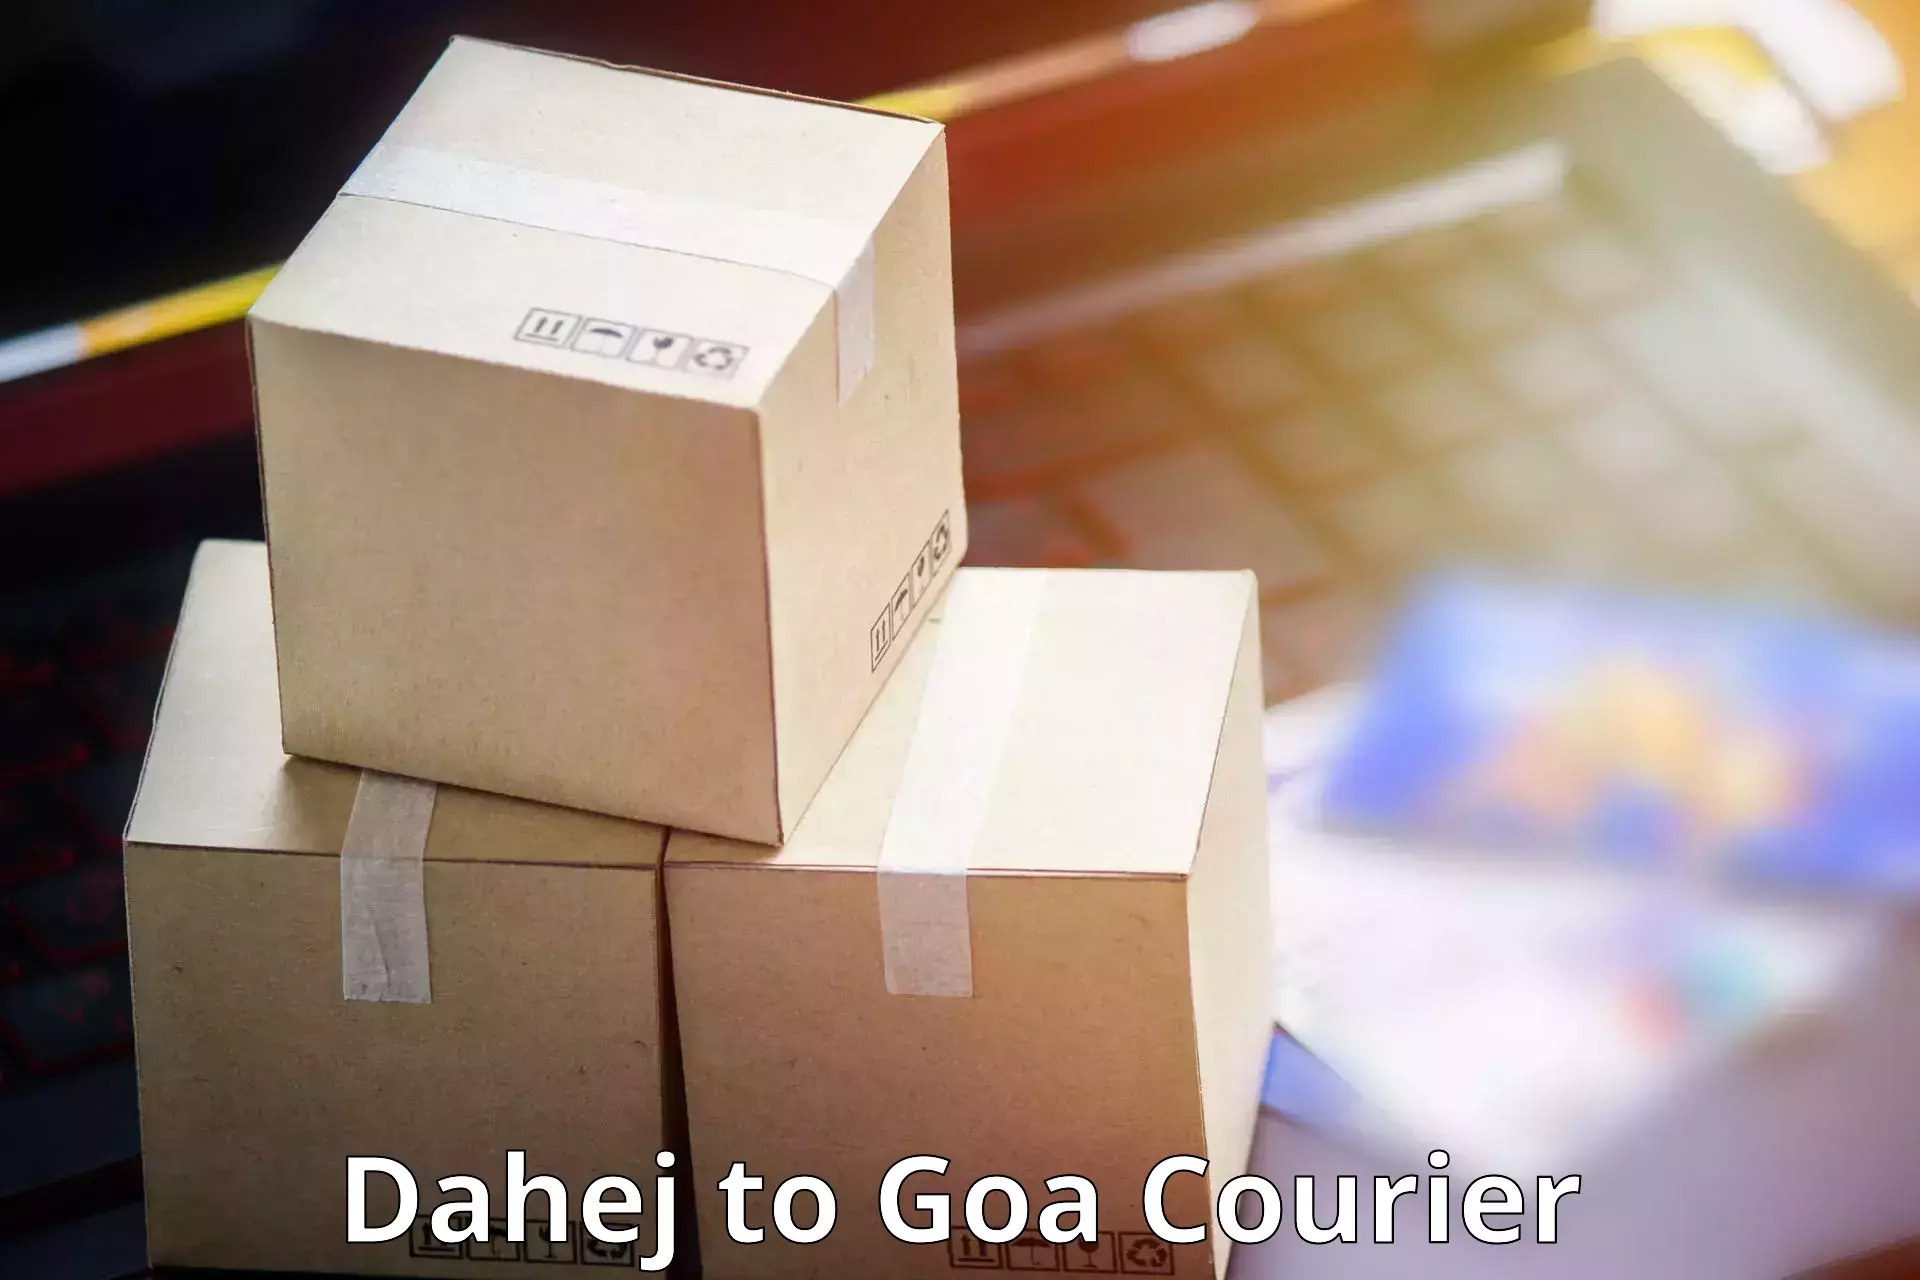 Easy return solutions Dahej to South Goa